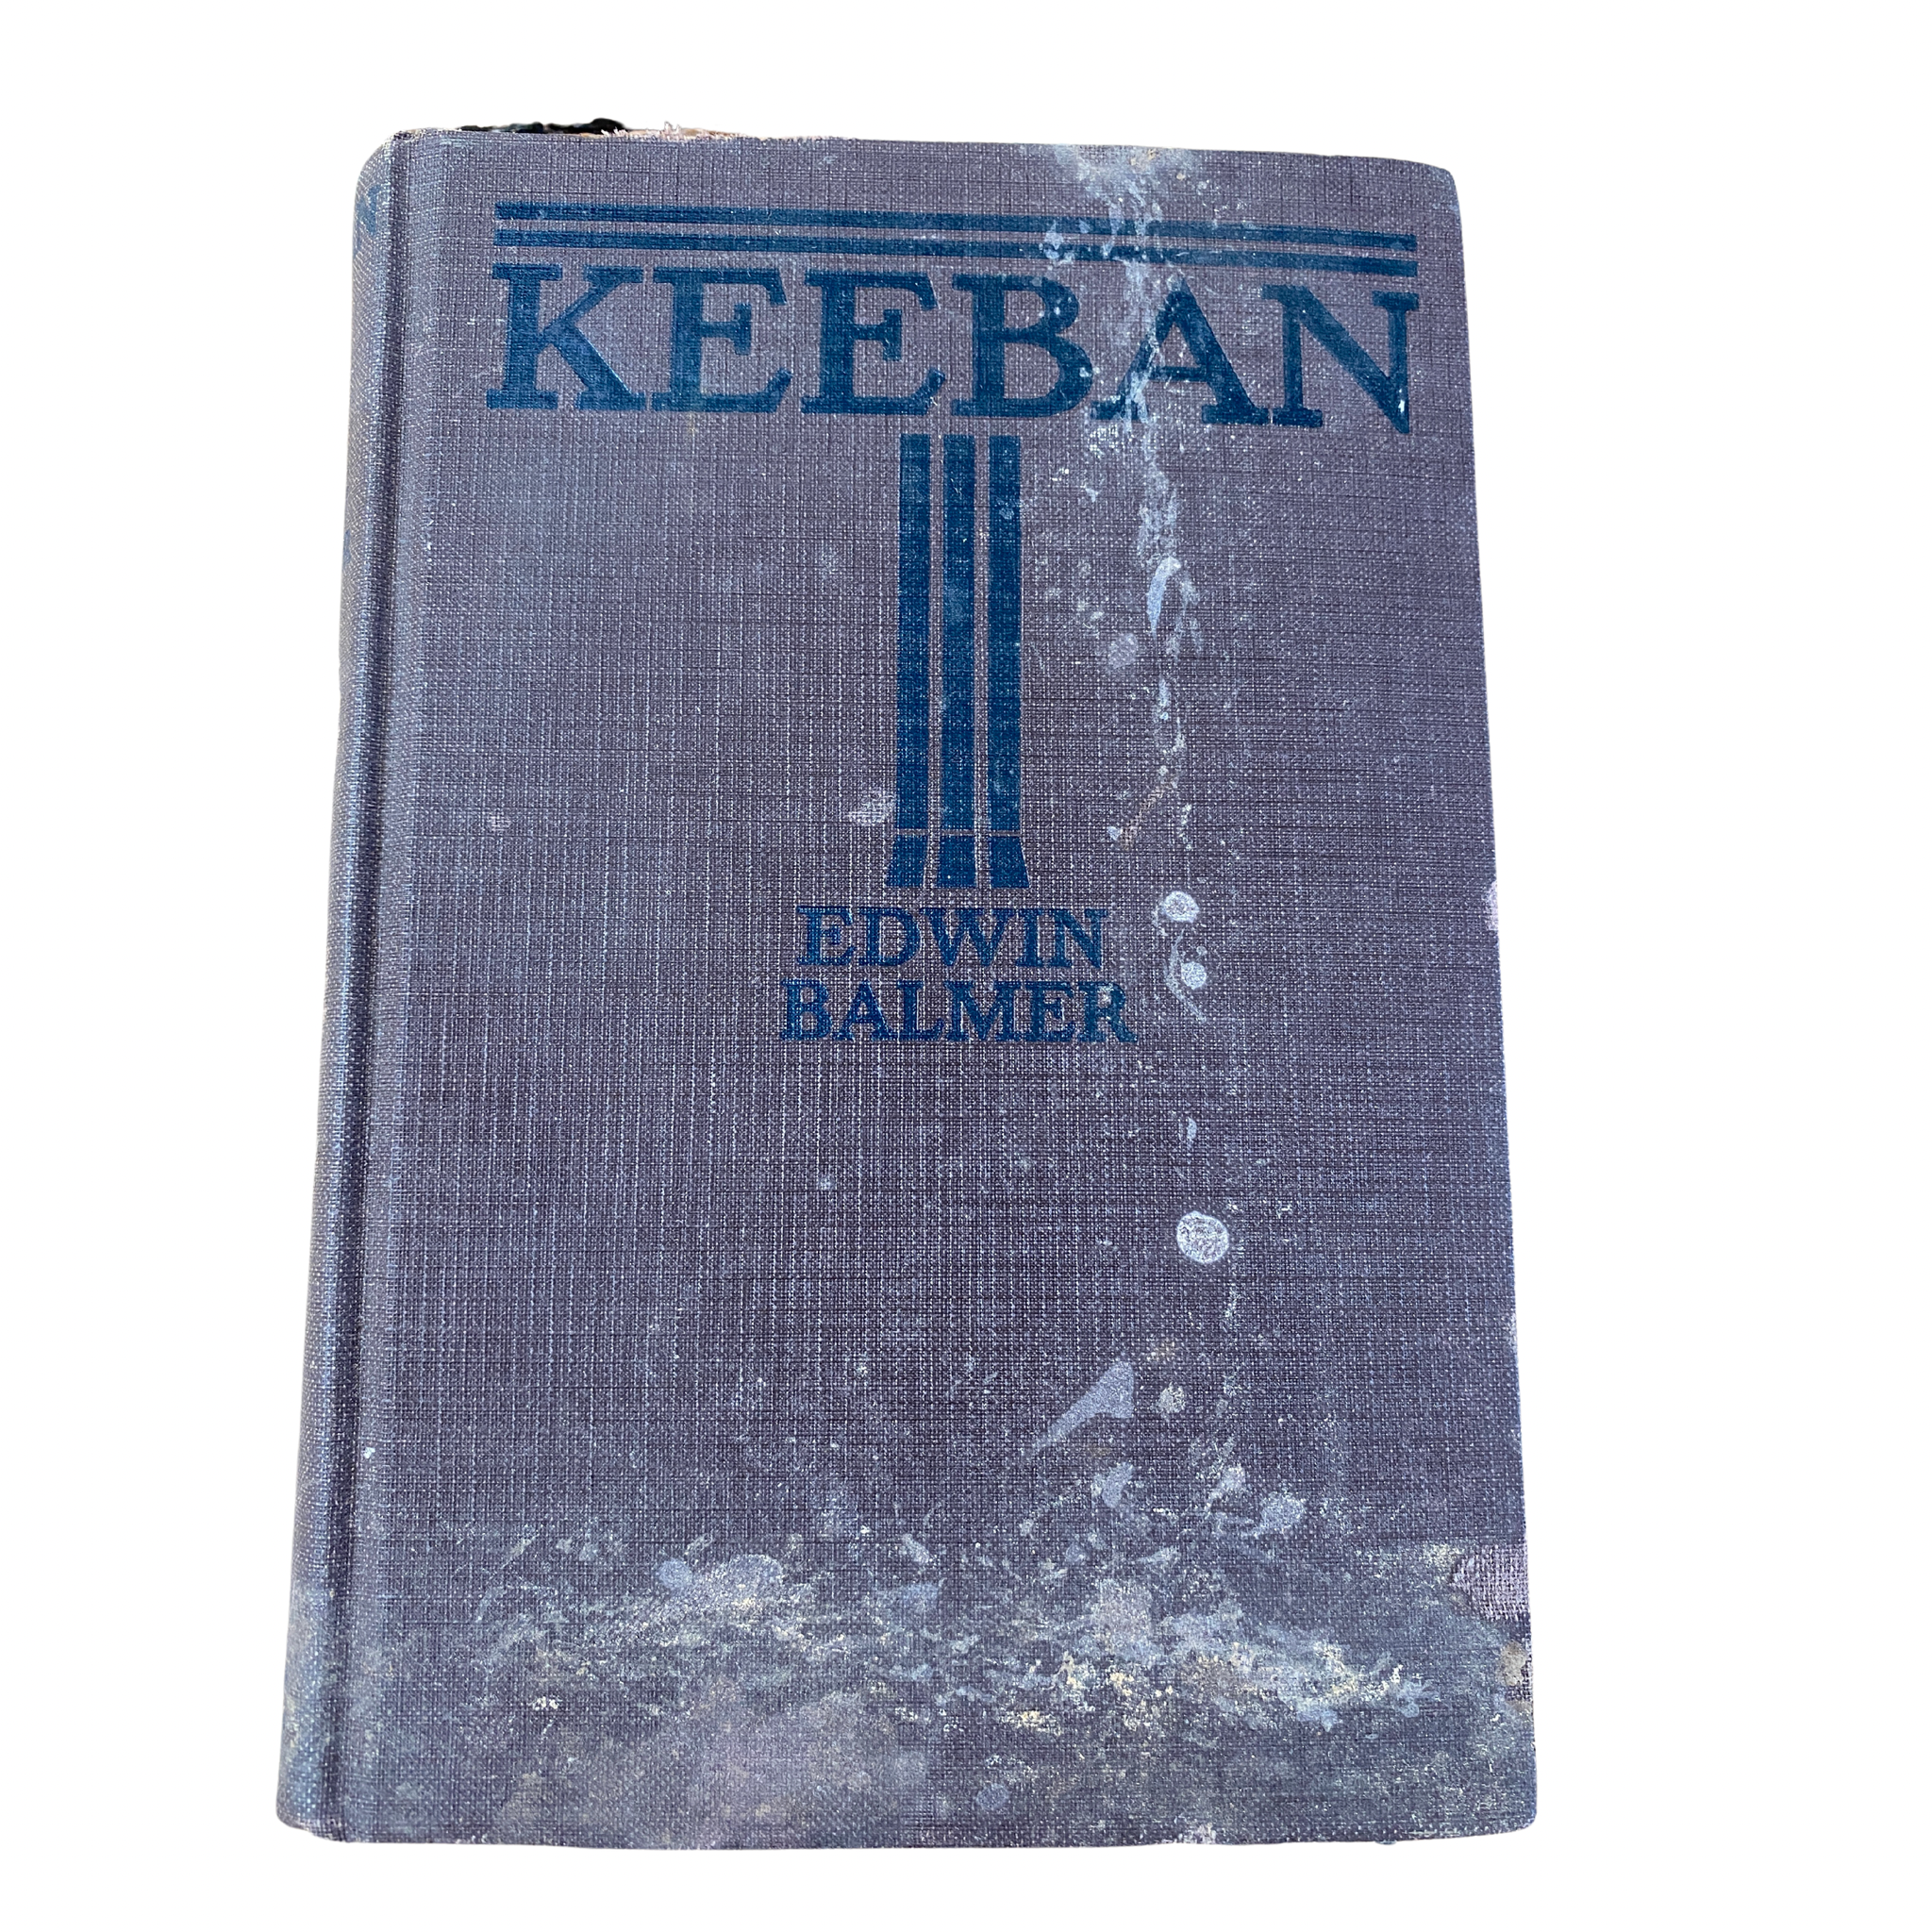 1923 Keeban